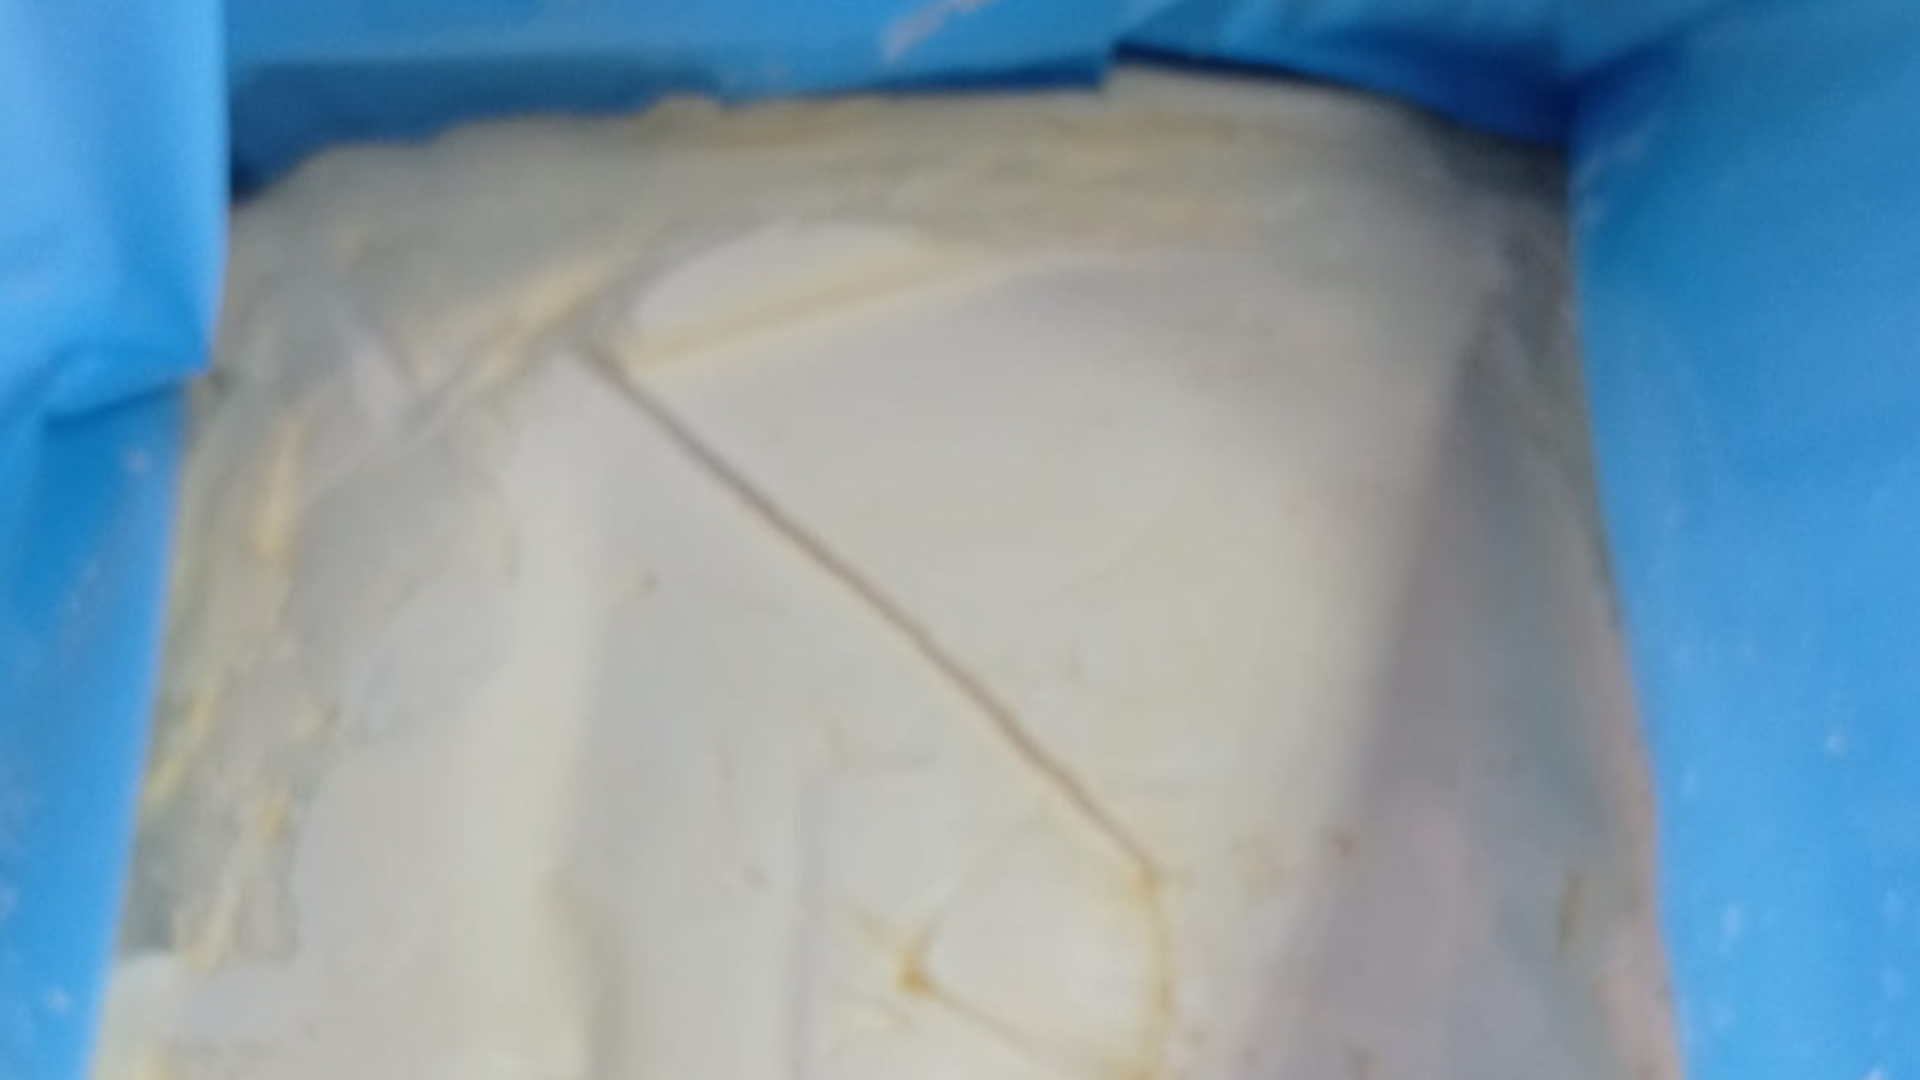 Масло монолит 25 кг 82 % Конапроли / Conaprole от кондитерского магазина Фрезье https://fraisier.ru